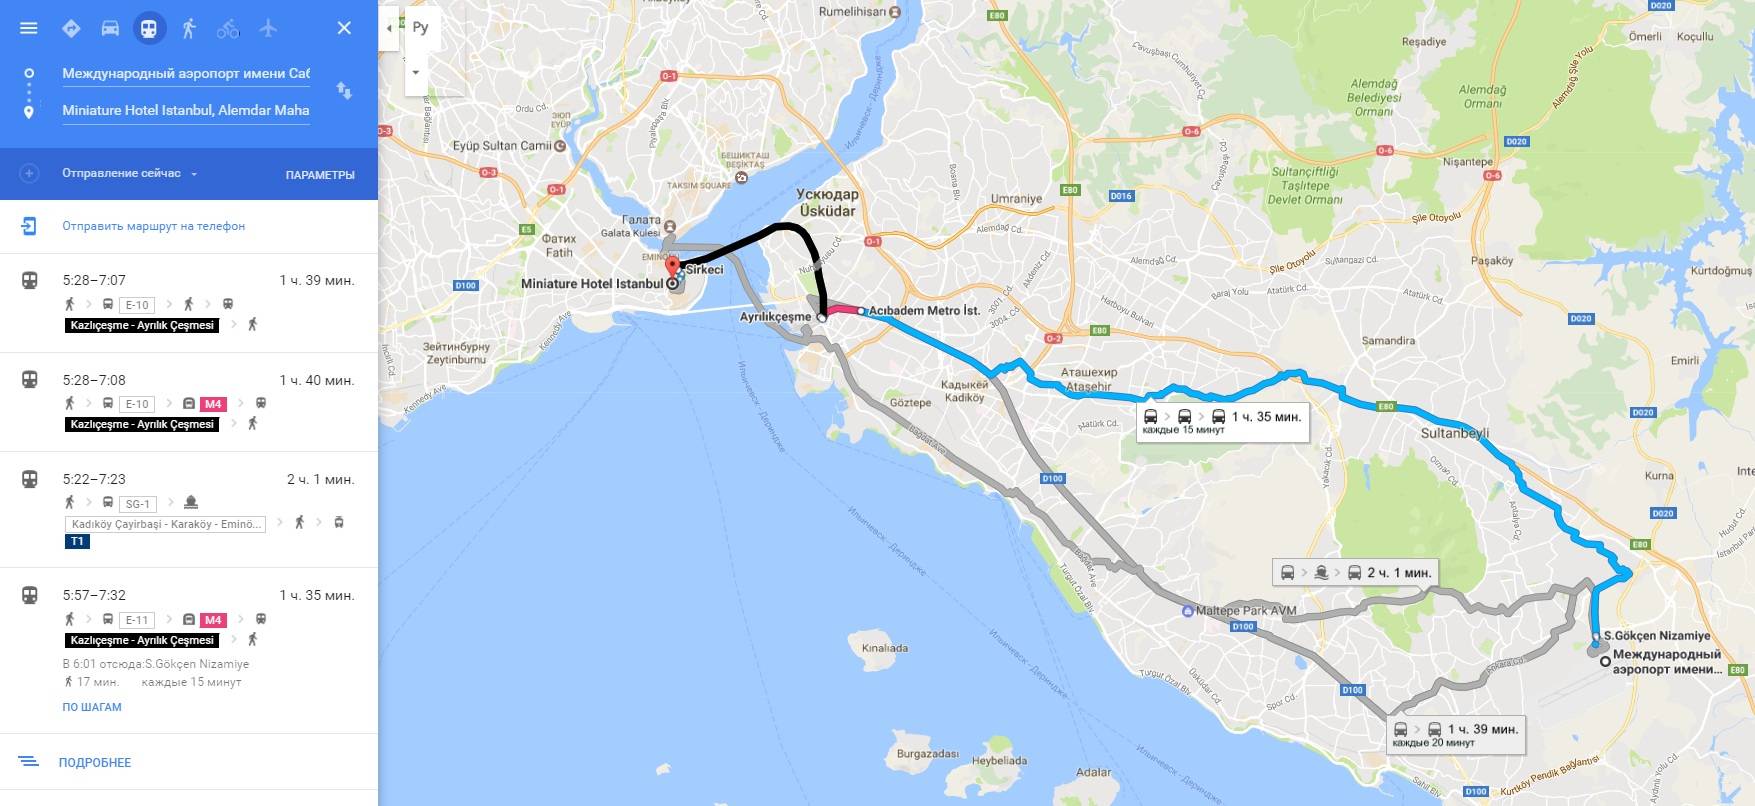 Новый аэропорт стамбула: как добраться до центра города